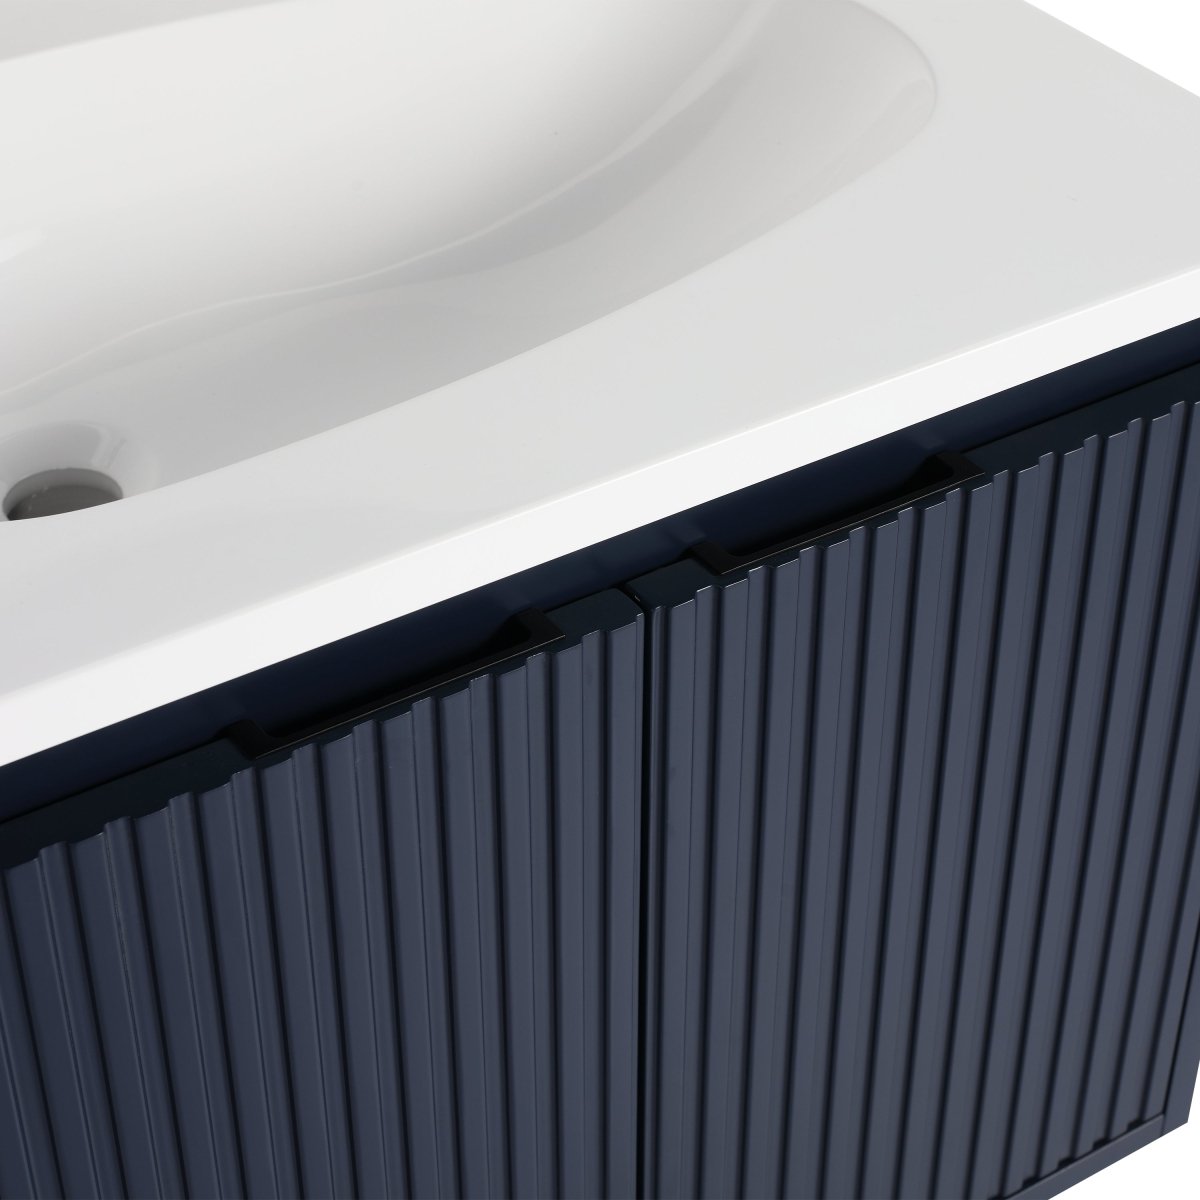 ExBrite 24" Floating Bathroom Vanity with Drop-Shaped Resin Sink